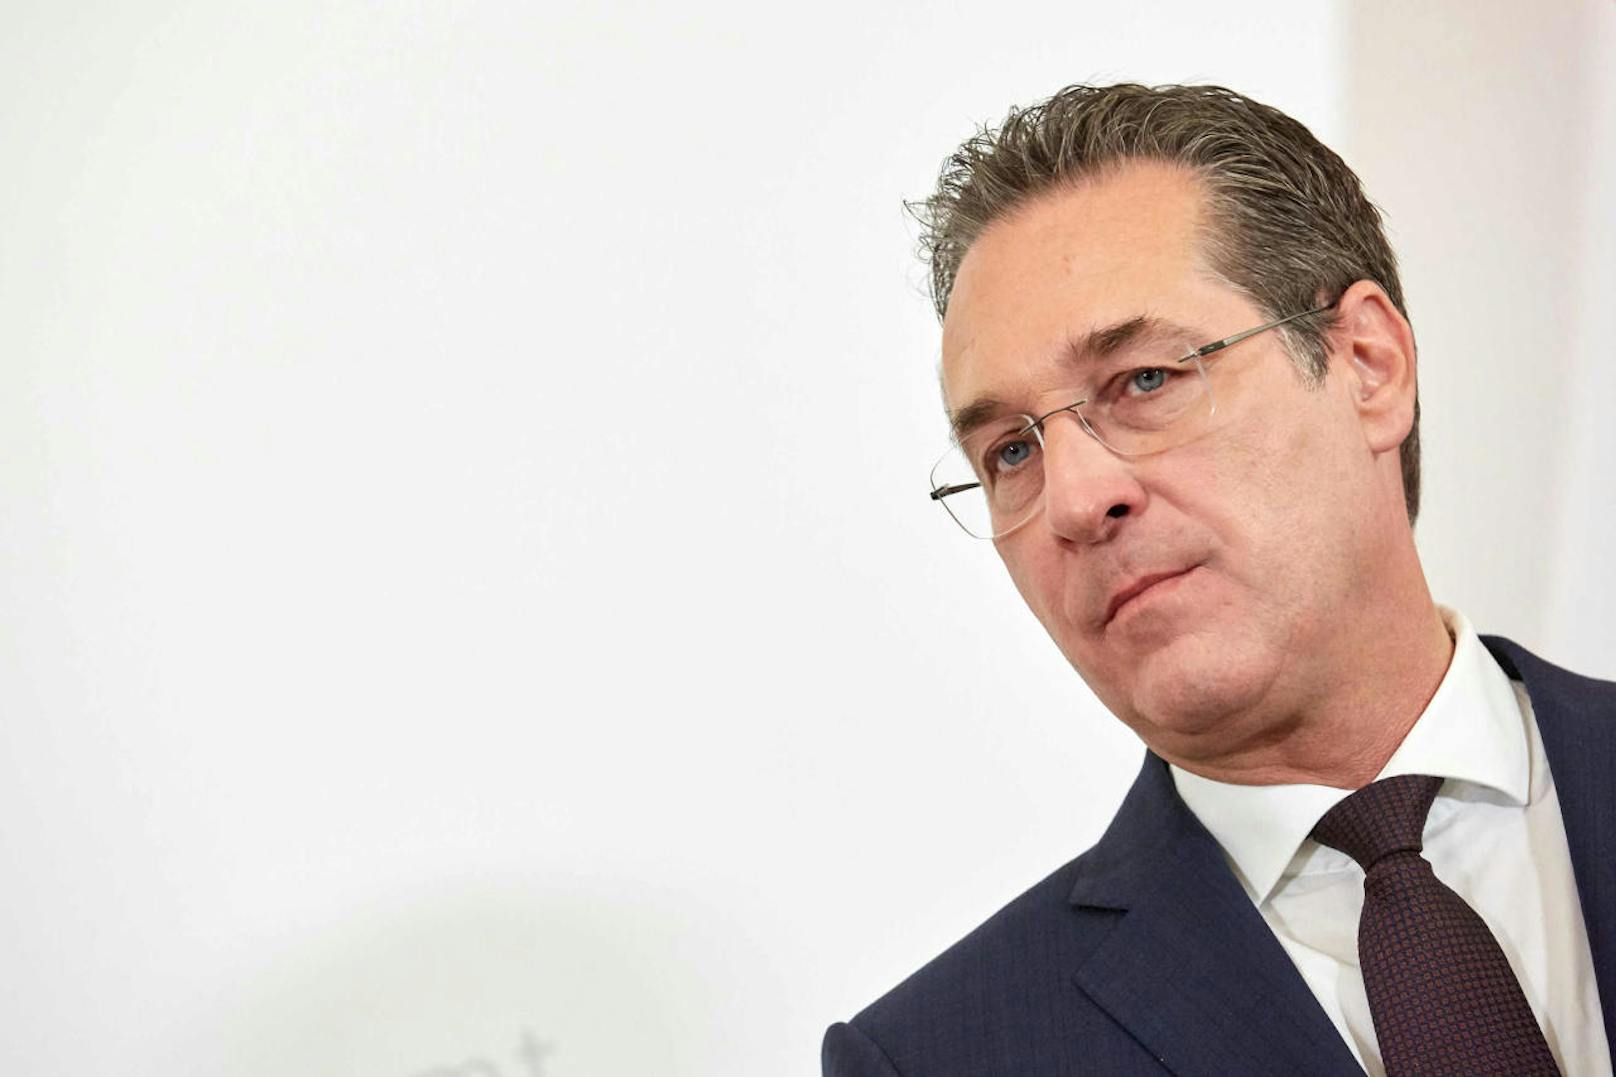 Bei den Ermittlungen gegen Strache wurde ein mutmaßliches Spesenkonto veröffentlicht. Laut dem Wiener FPÖ-Landesparteiobmann Dominik Nepp sollte das Spesenkonto einen monatlichen Verfügungsrahmen von 10.000 Euro aufgewiesen haben.